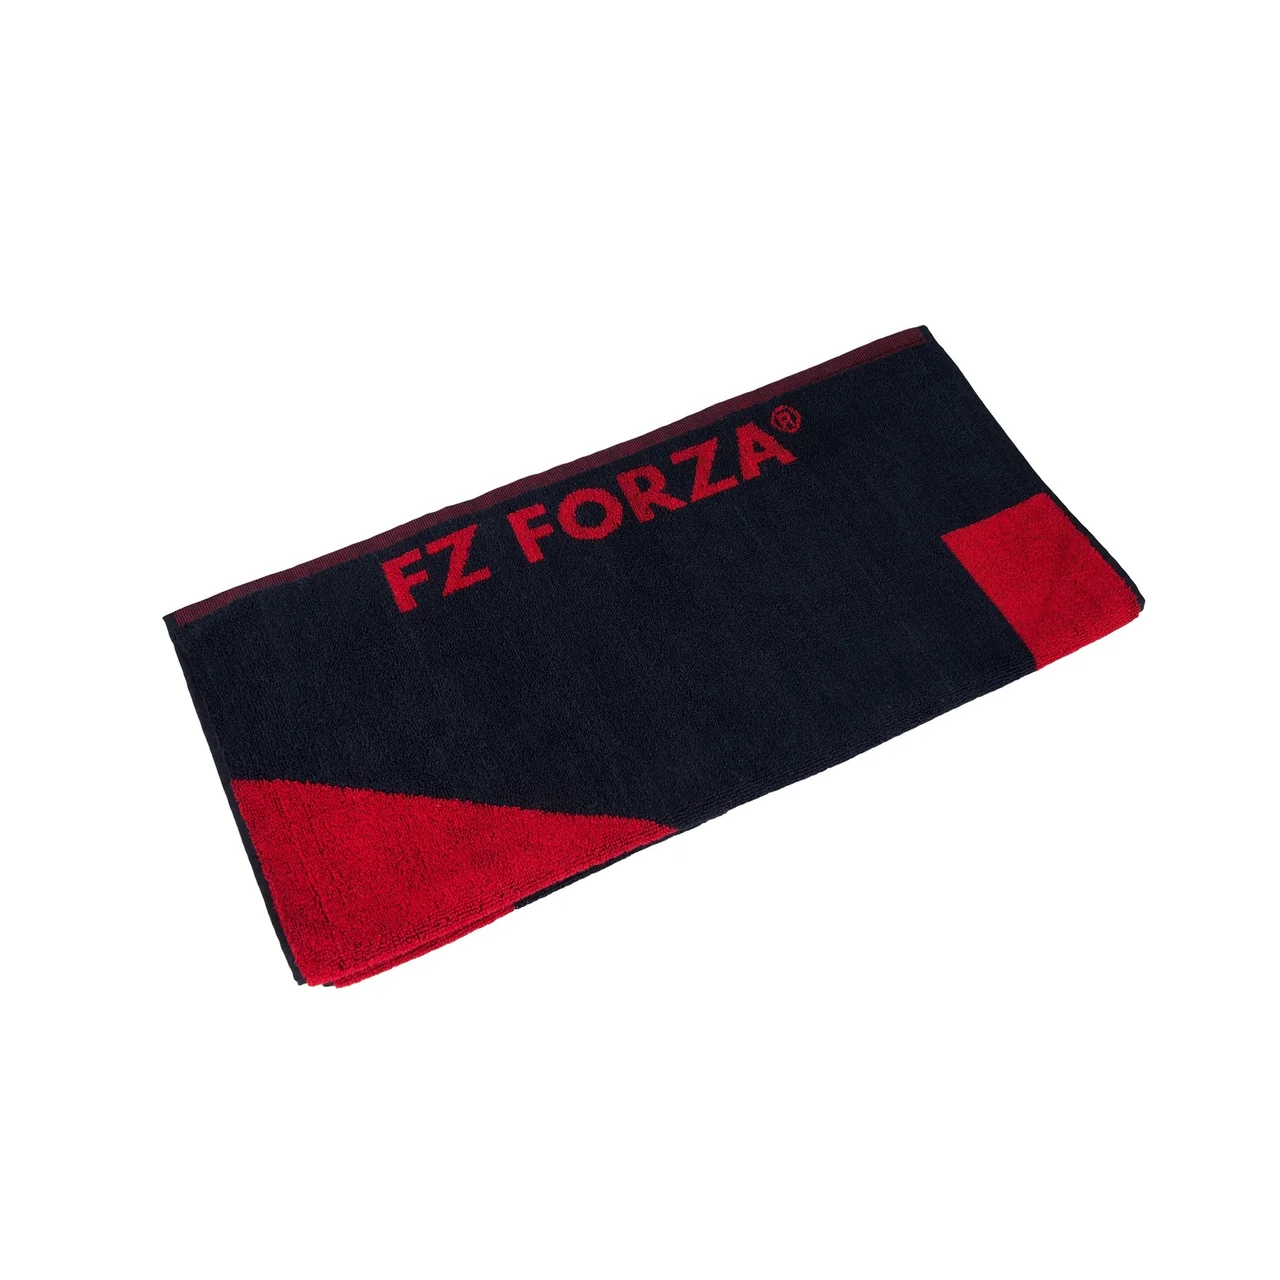 FZ Forza Mick Towel Small